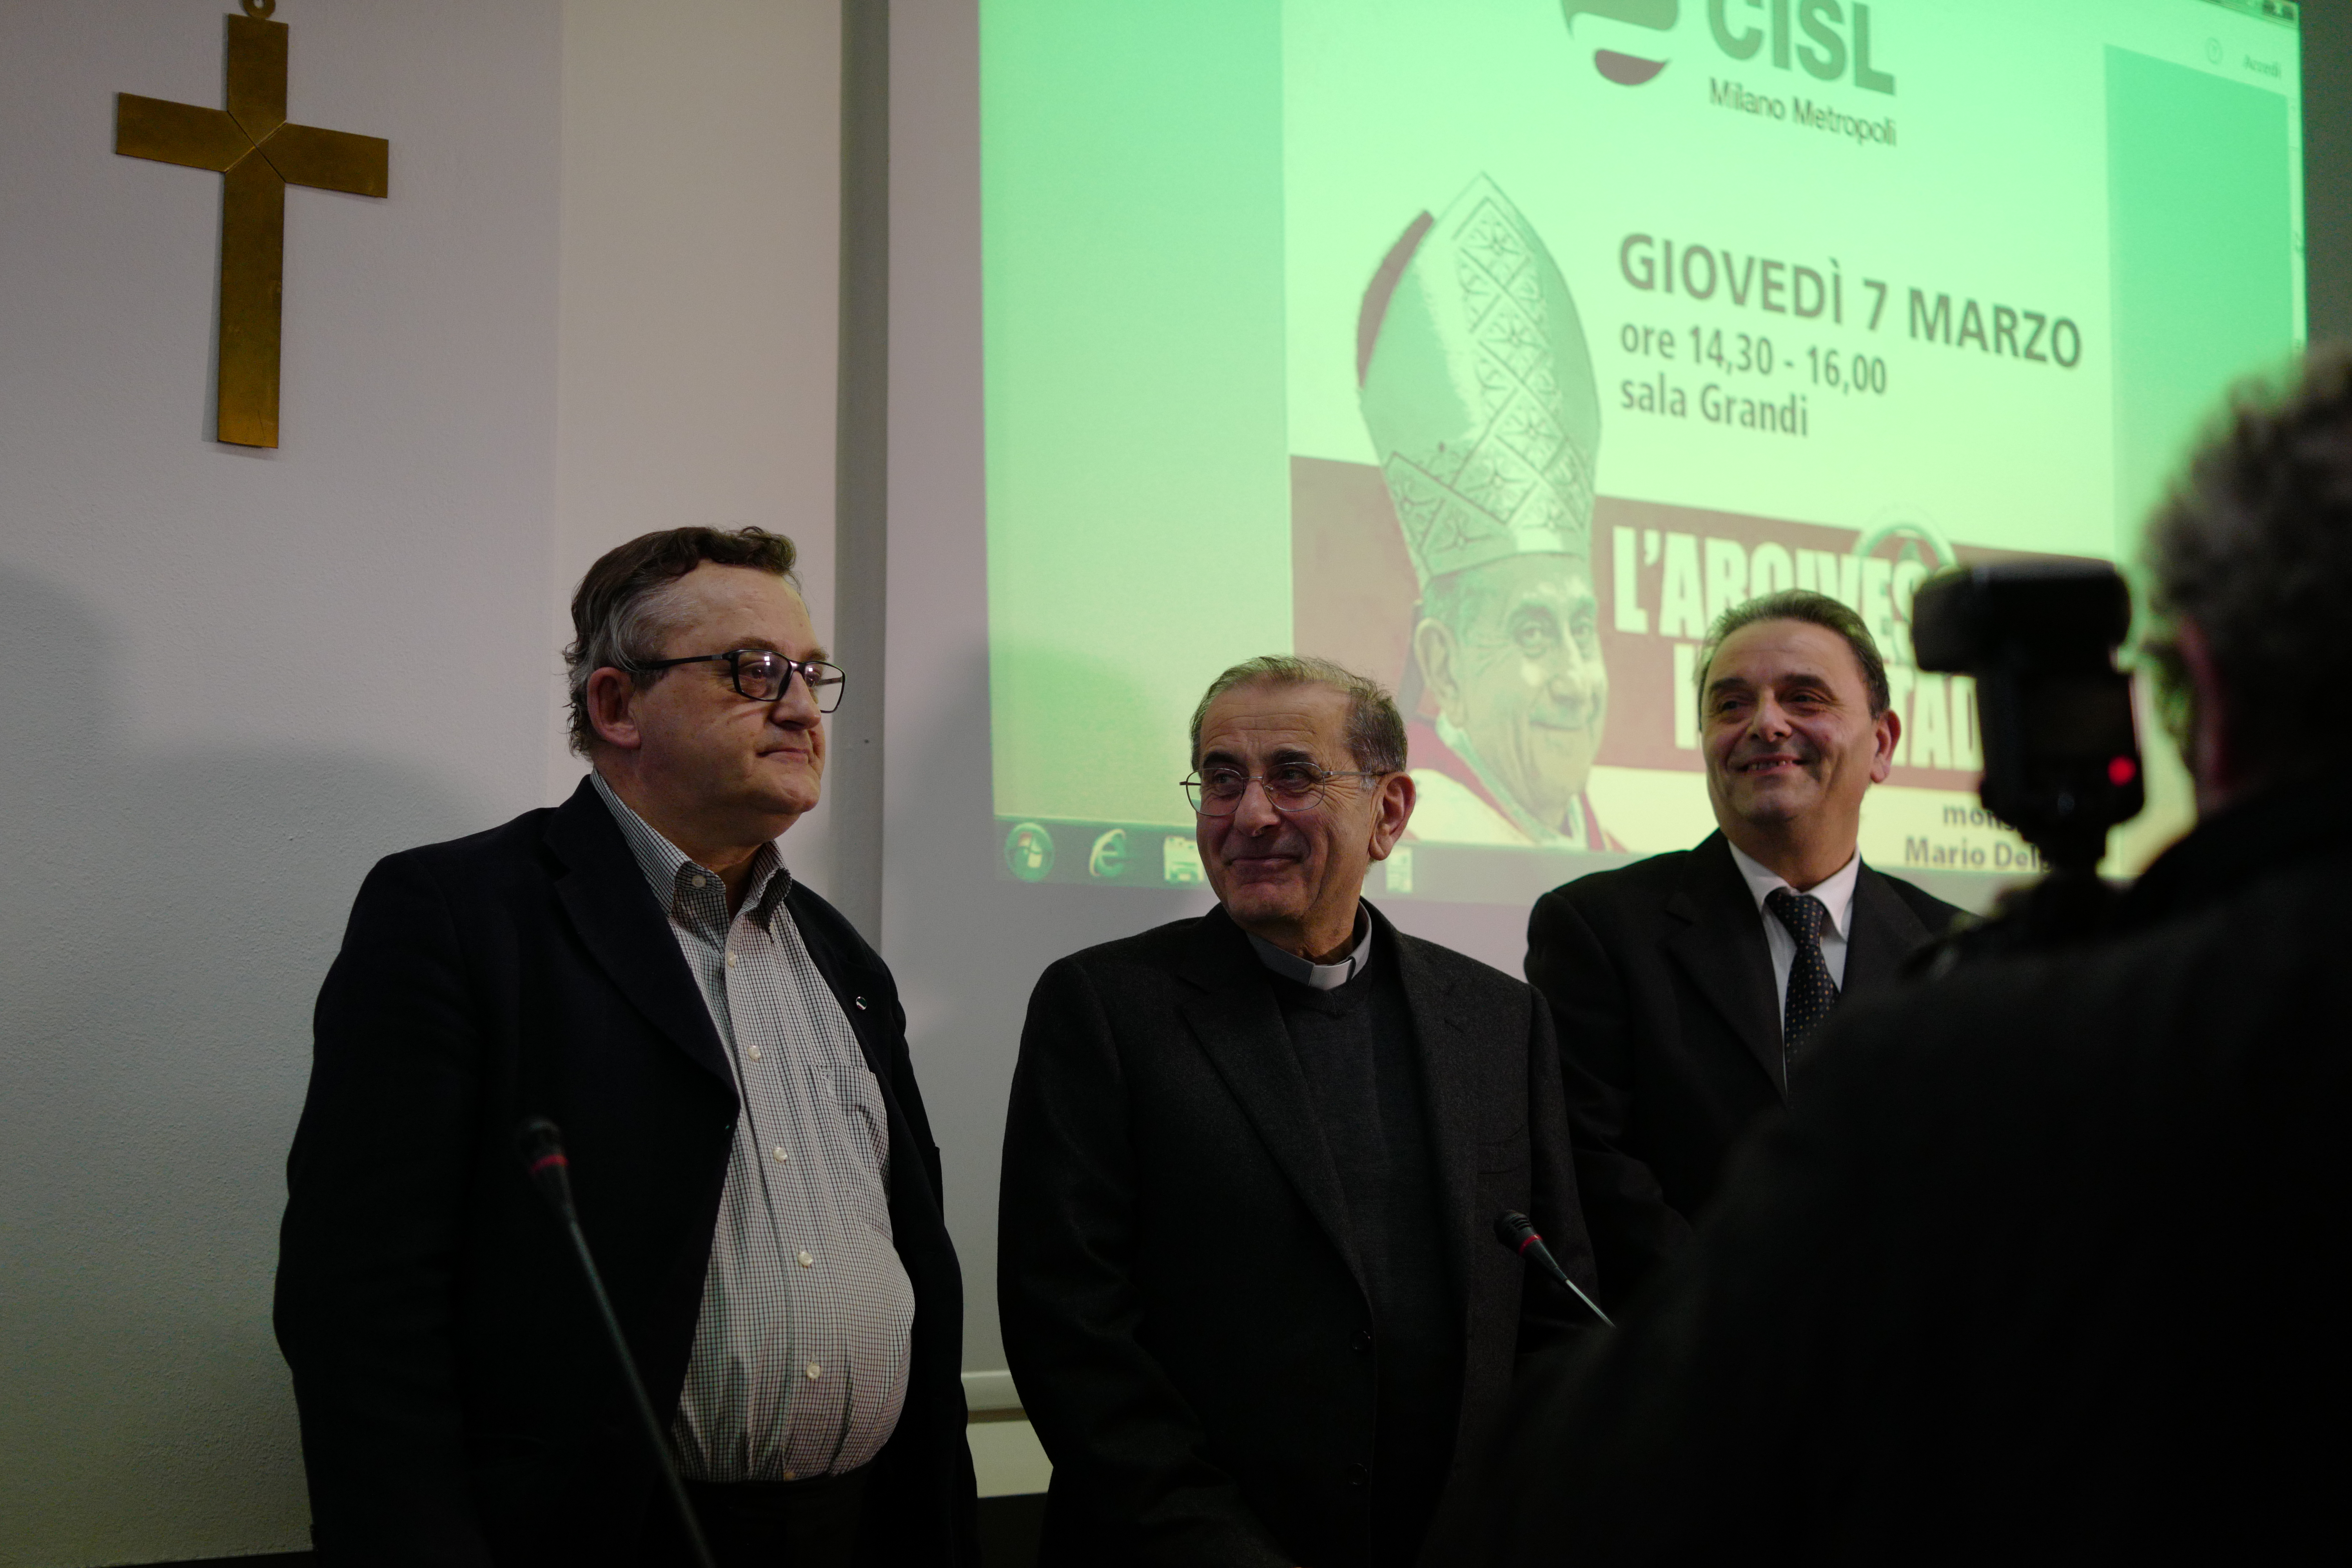 L'arcivescovo con Carlo Gerla (Cisl Milano) e Ugo Duci (Cisl Lombardia)